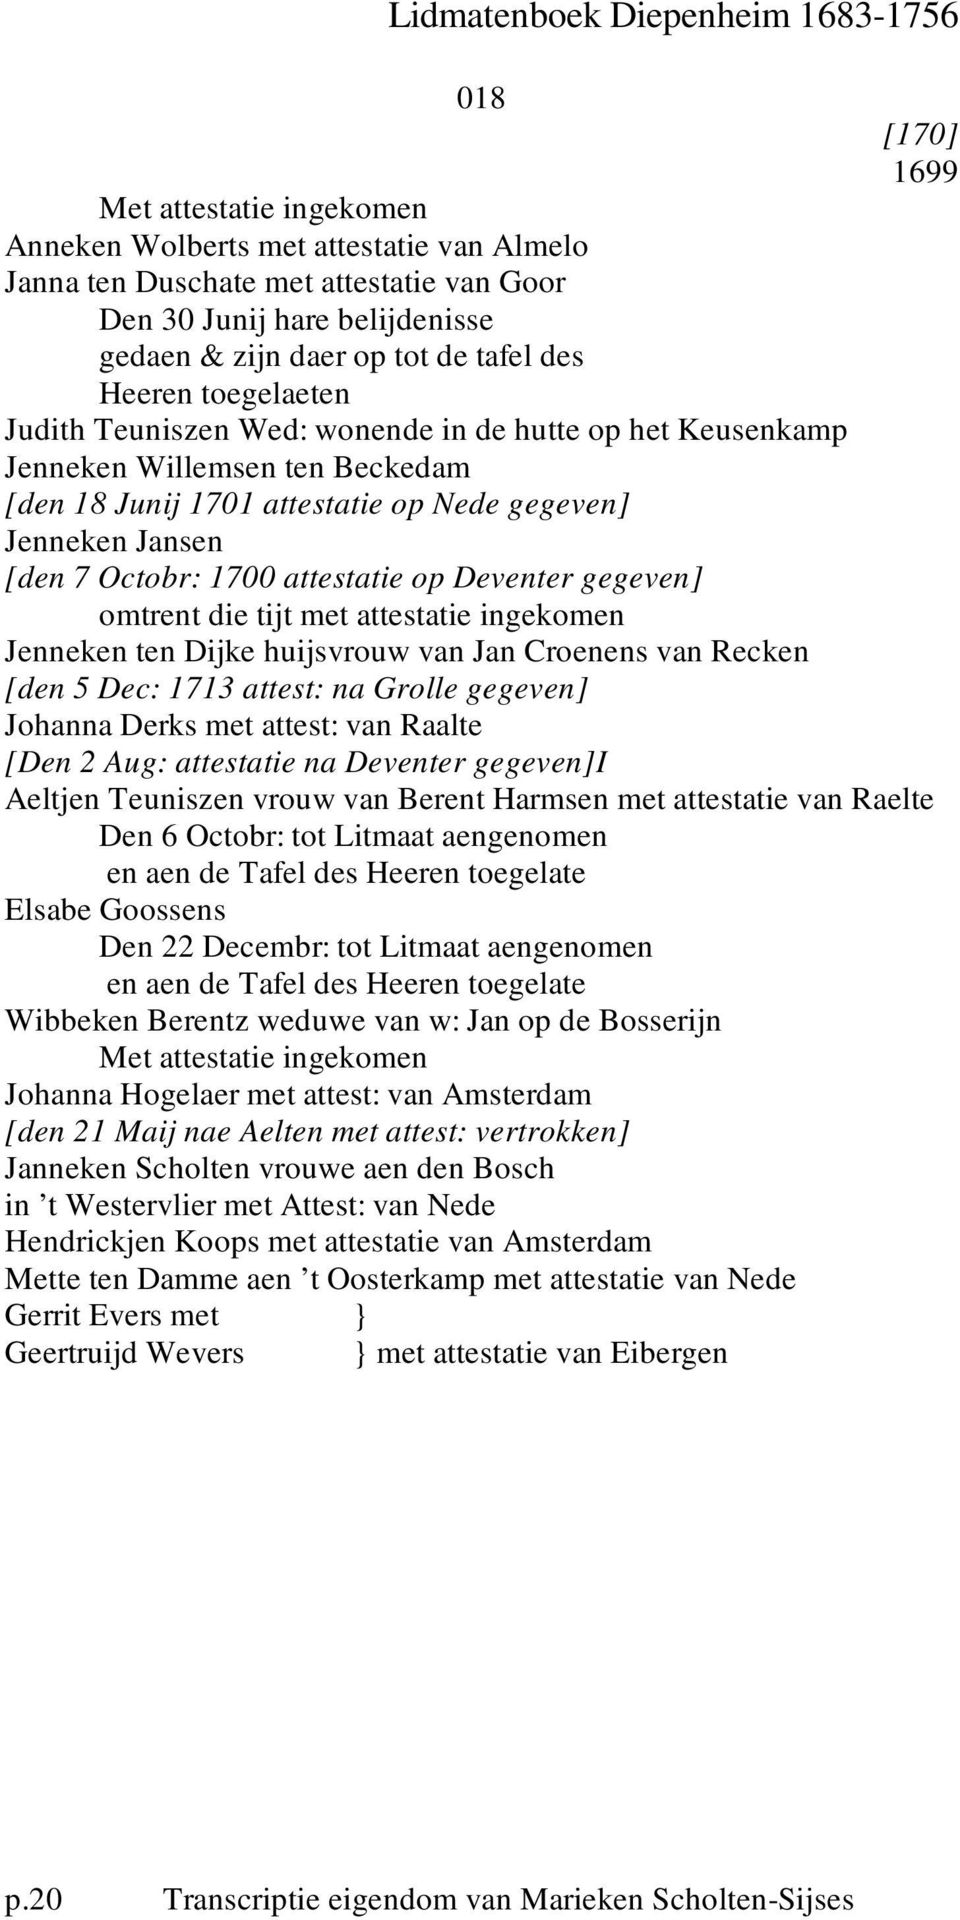 omtrent die tijt met attestatie ingekomen Jenneken ten Dijke huijsvrouw van Jan Croenens van Recken [den 5 Dec: 1713 attest: na Grolle gegeven] Johanna Derks met attest: van Raalte [Den 2 Aug: